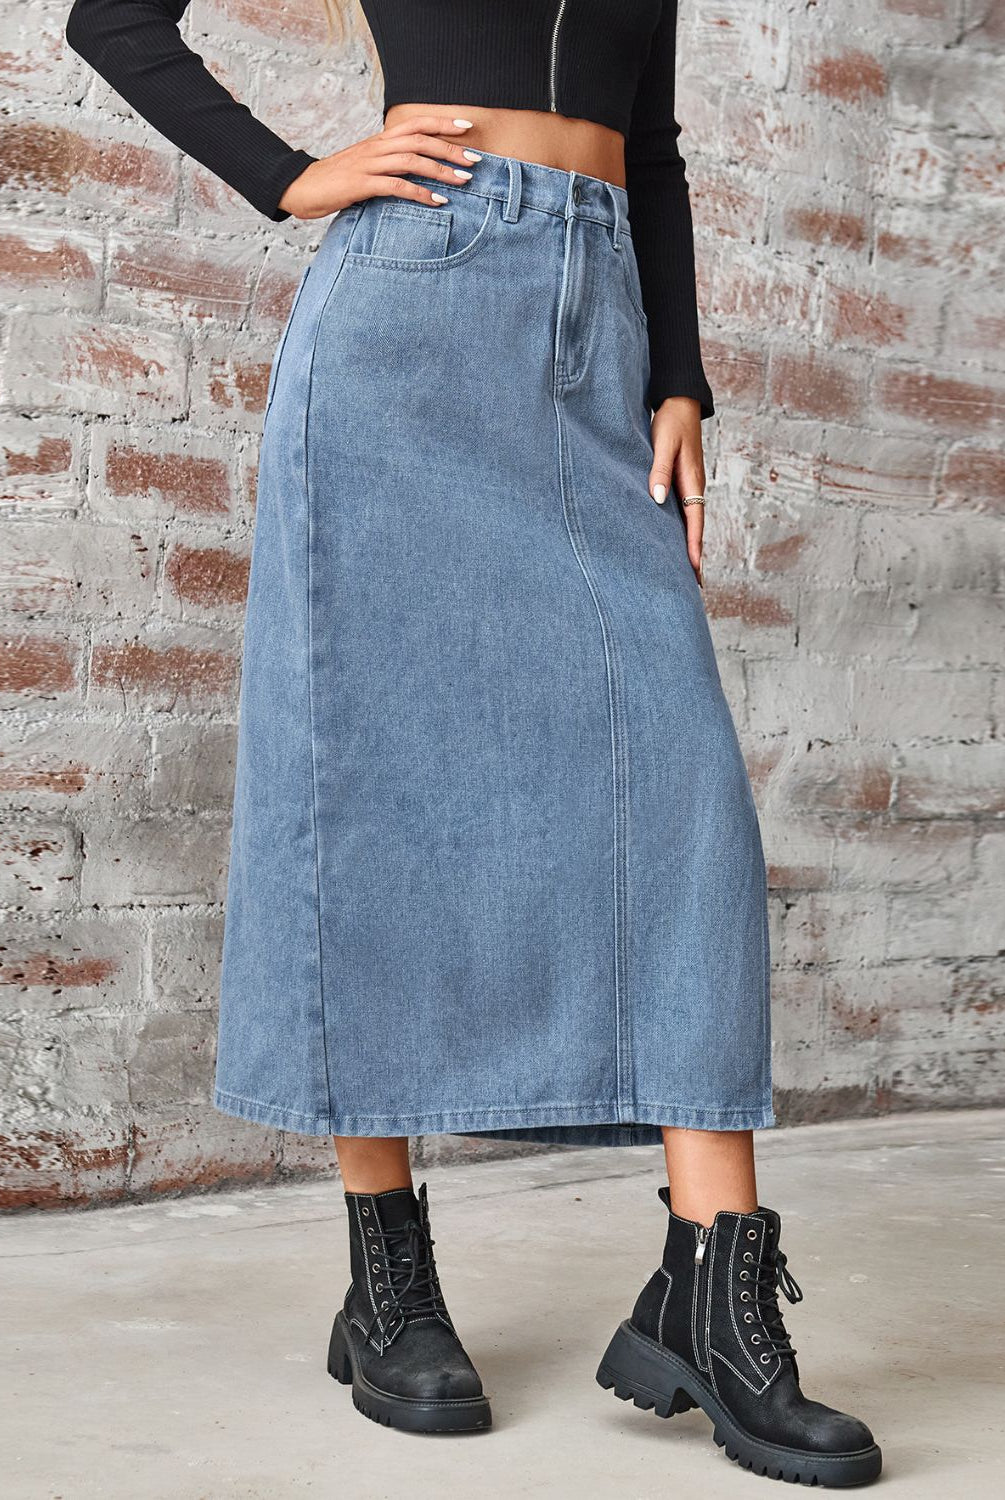 Women's long denim skirt with high waist, slit, and pockets.